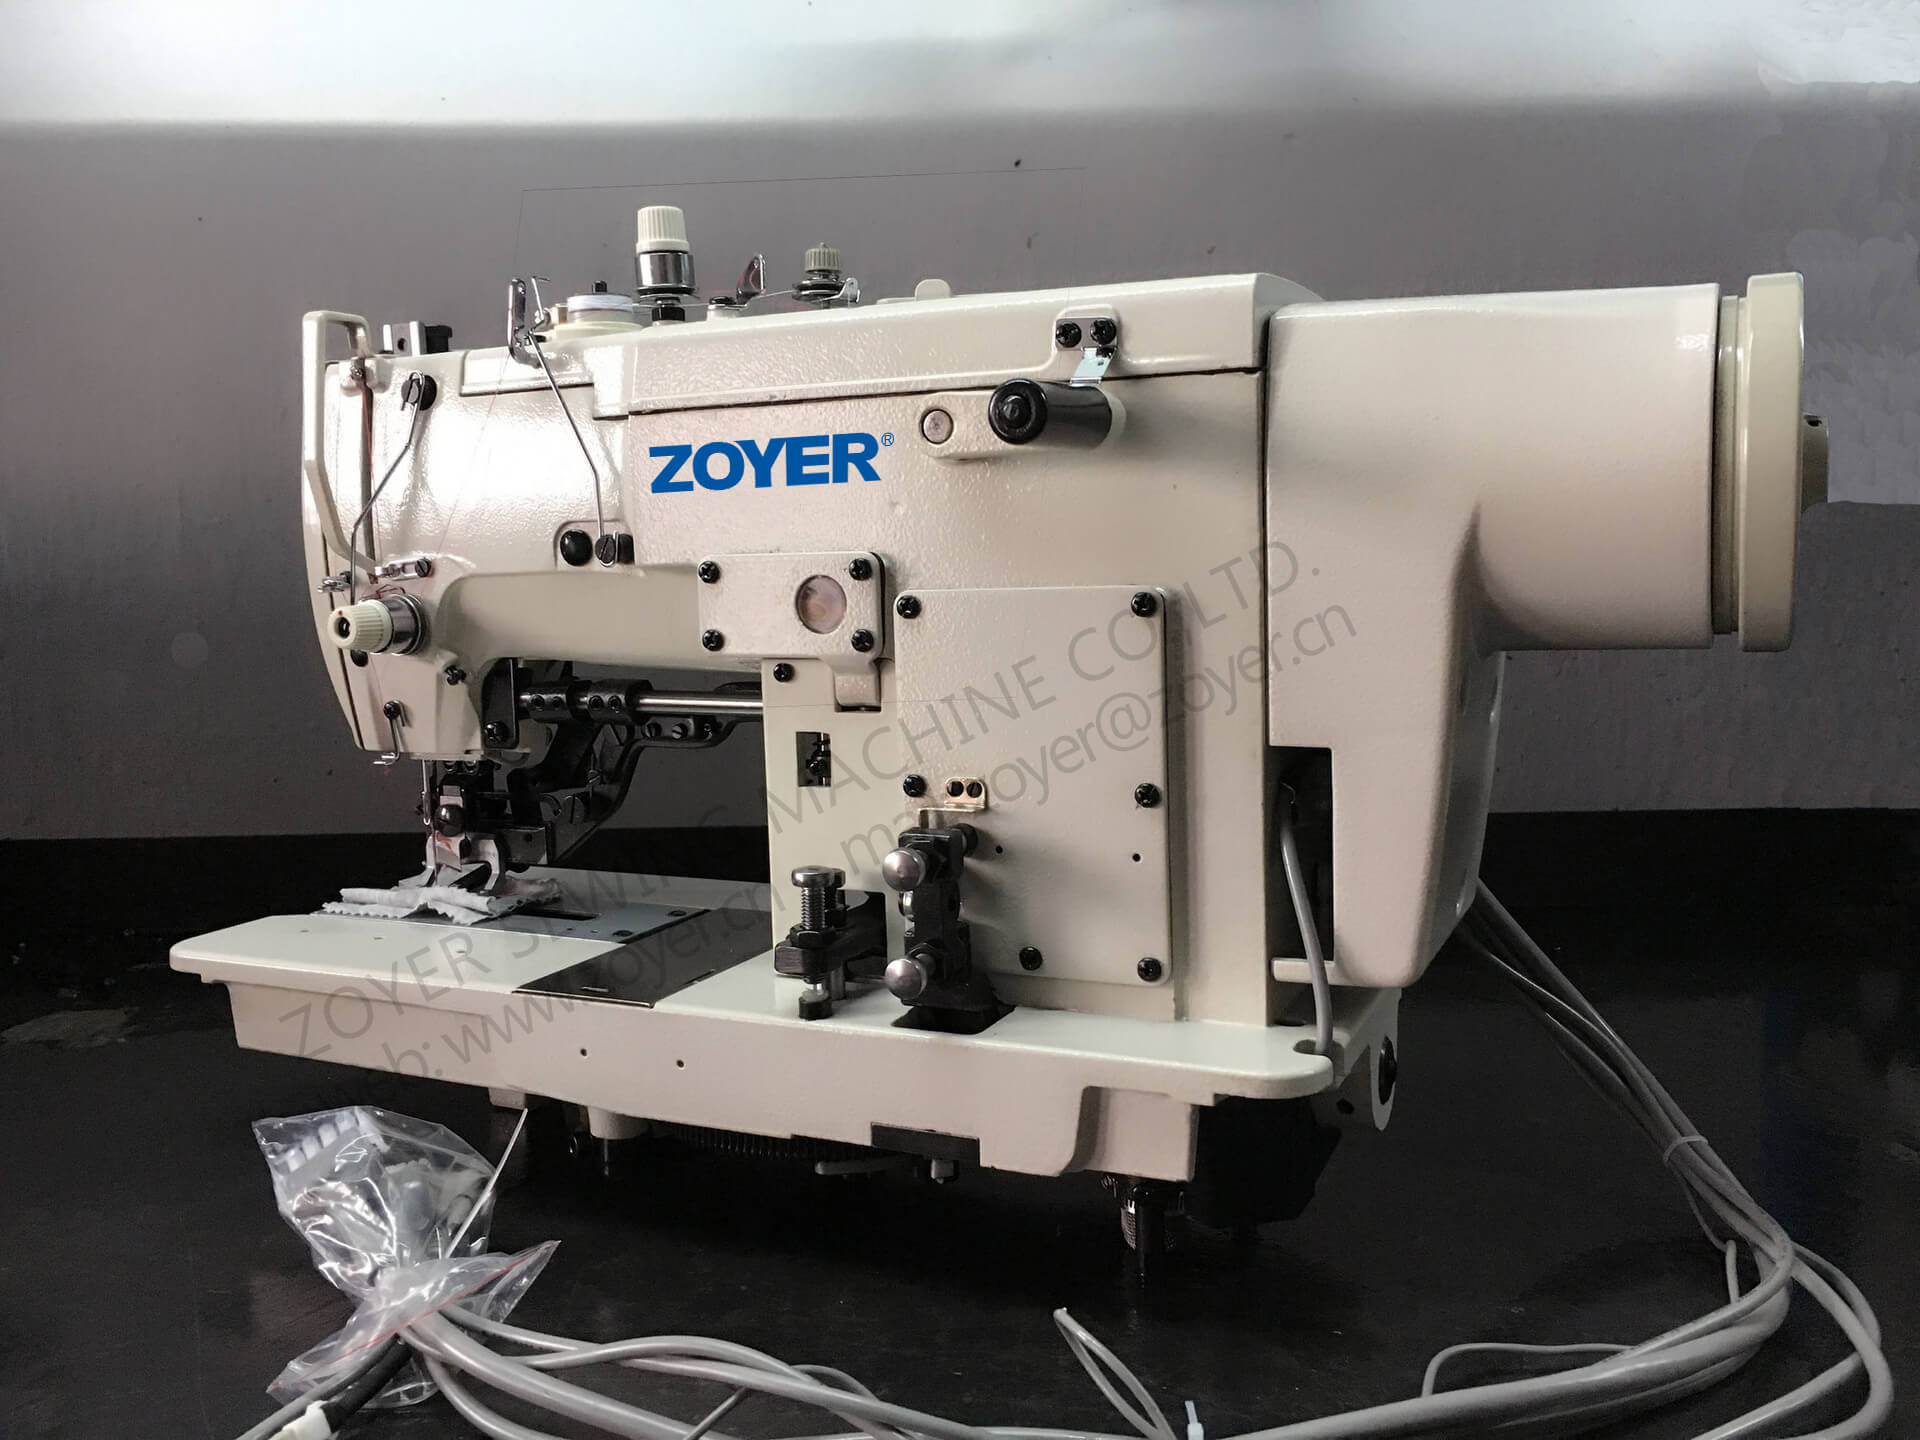 ZY781 zoyer 高速平缝直钮孔缝纫机